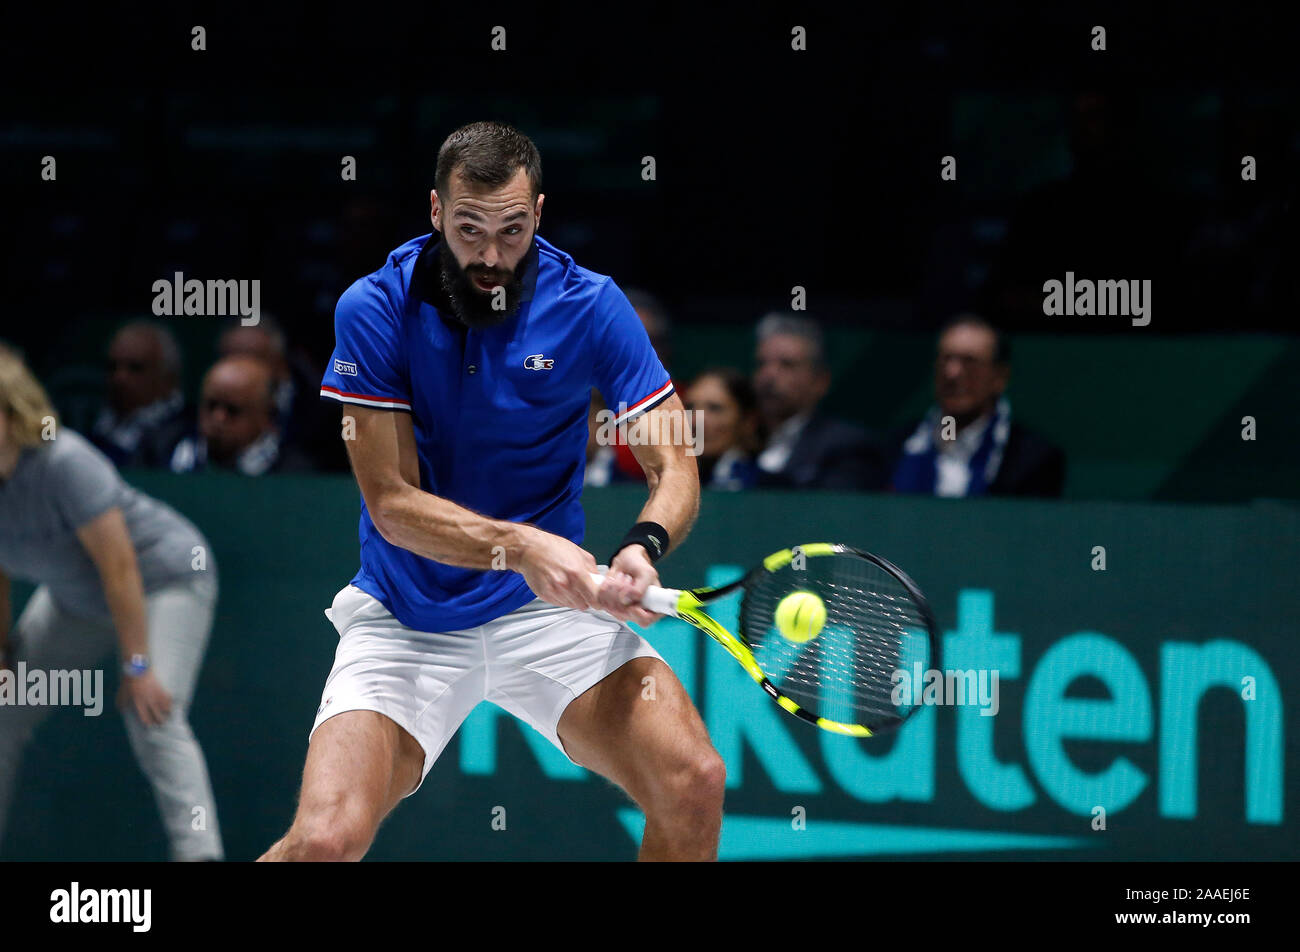 Benoit Paire de France en action contre la Serbie de Novak Djokovic au cours de jour 4 de la Coupe Davis 2019 à la Caja Magica. Banque D'Images